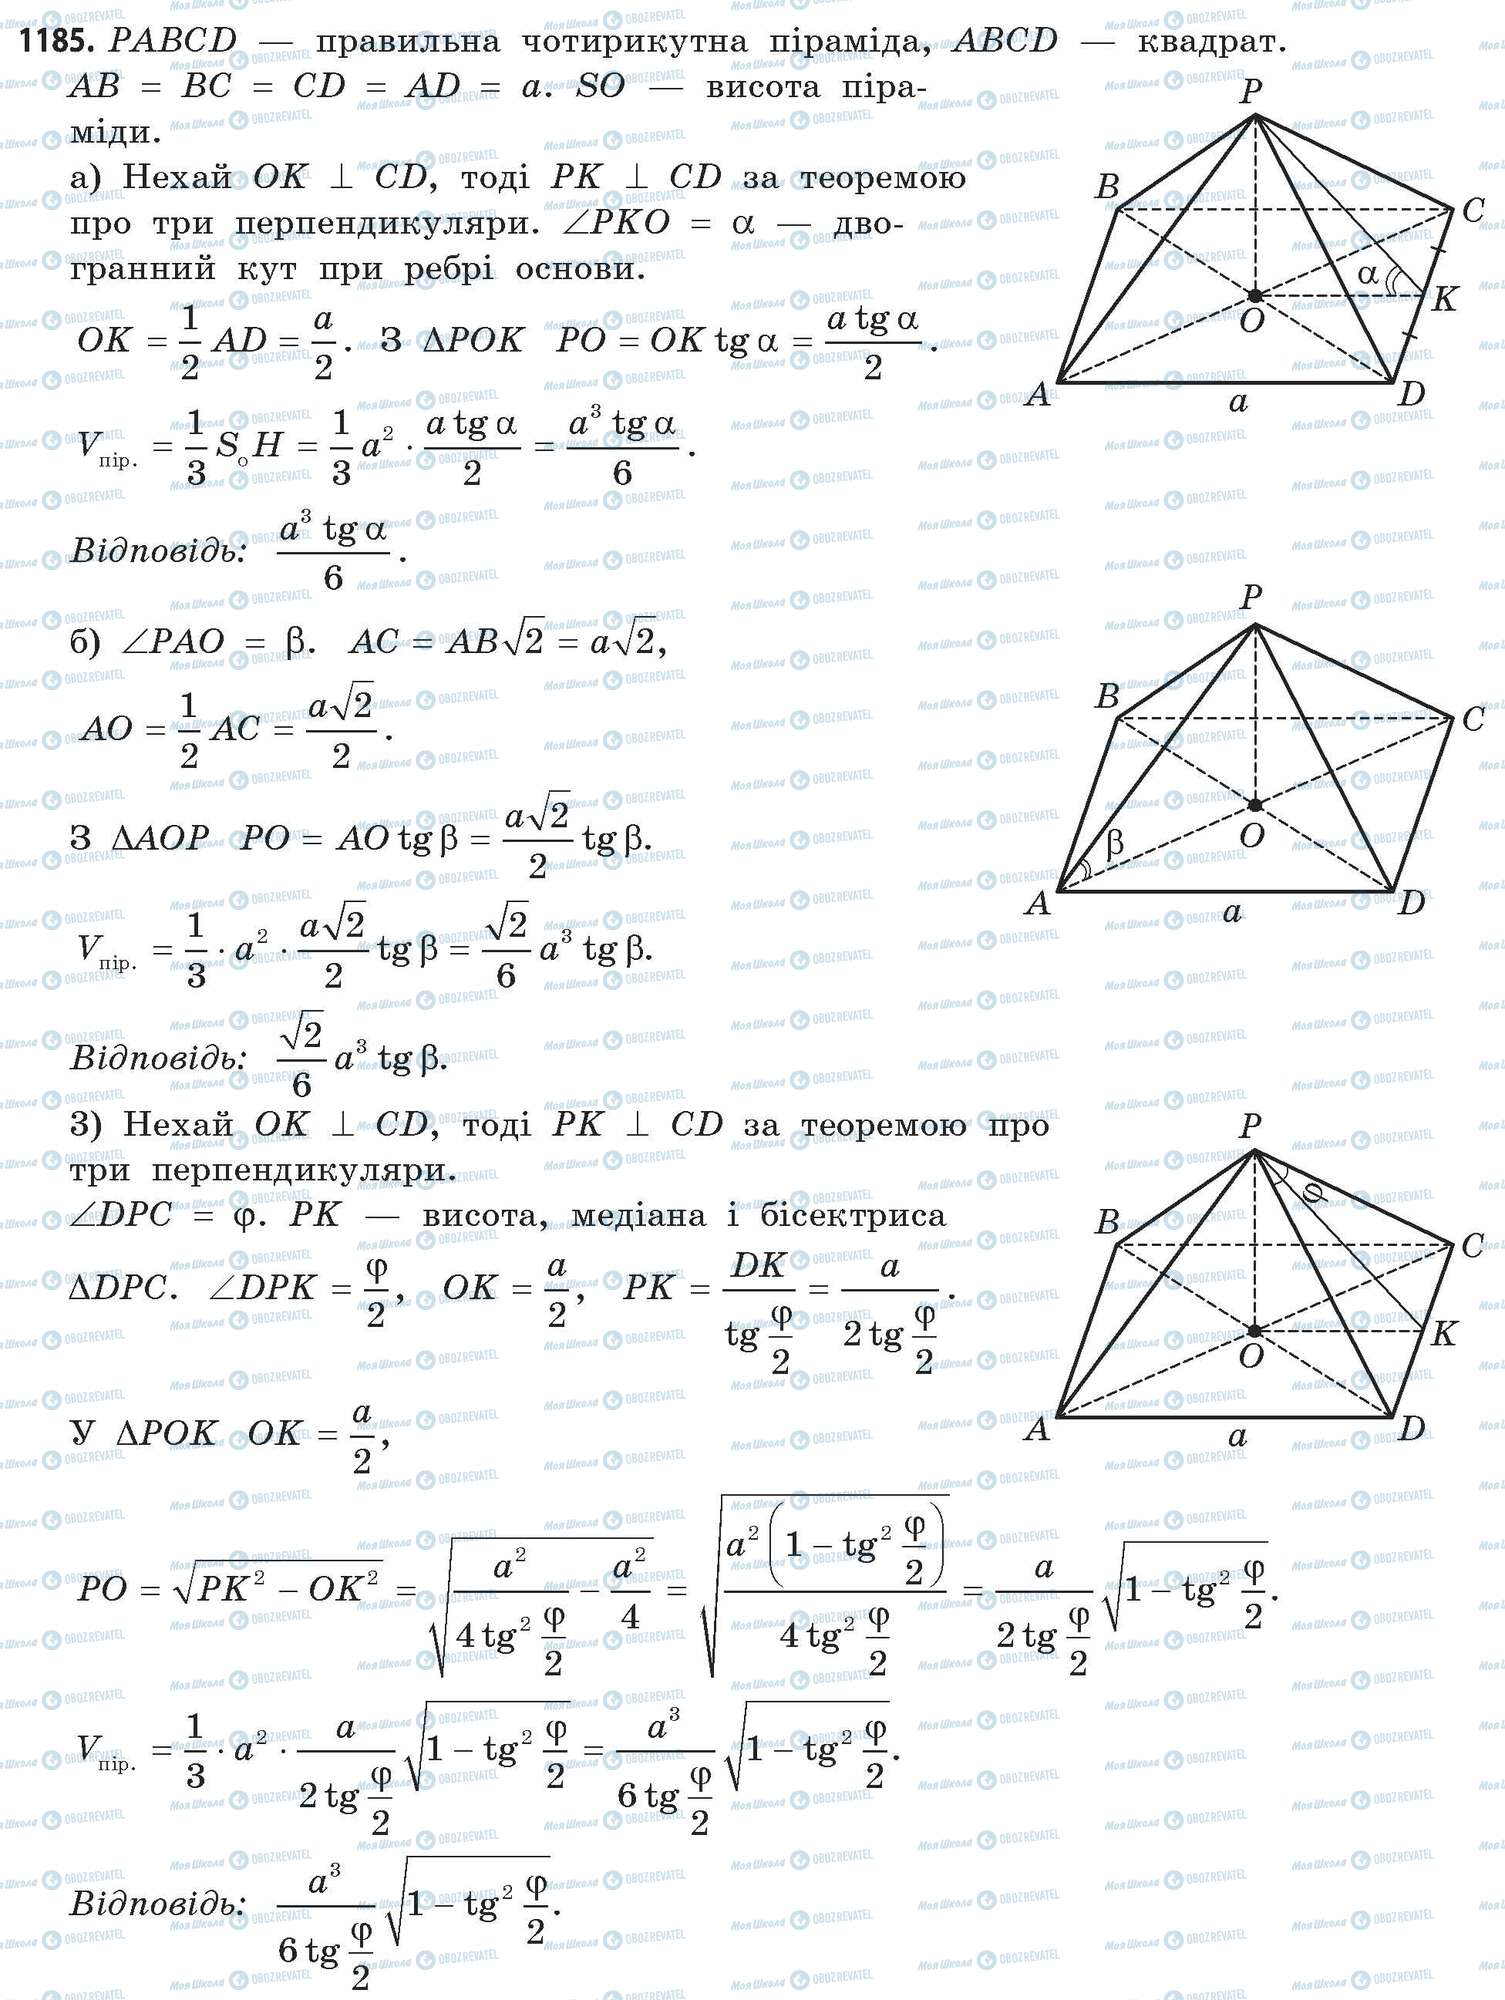 ГДЗ Математика 11 класс страница 1185